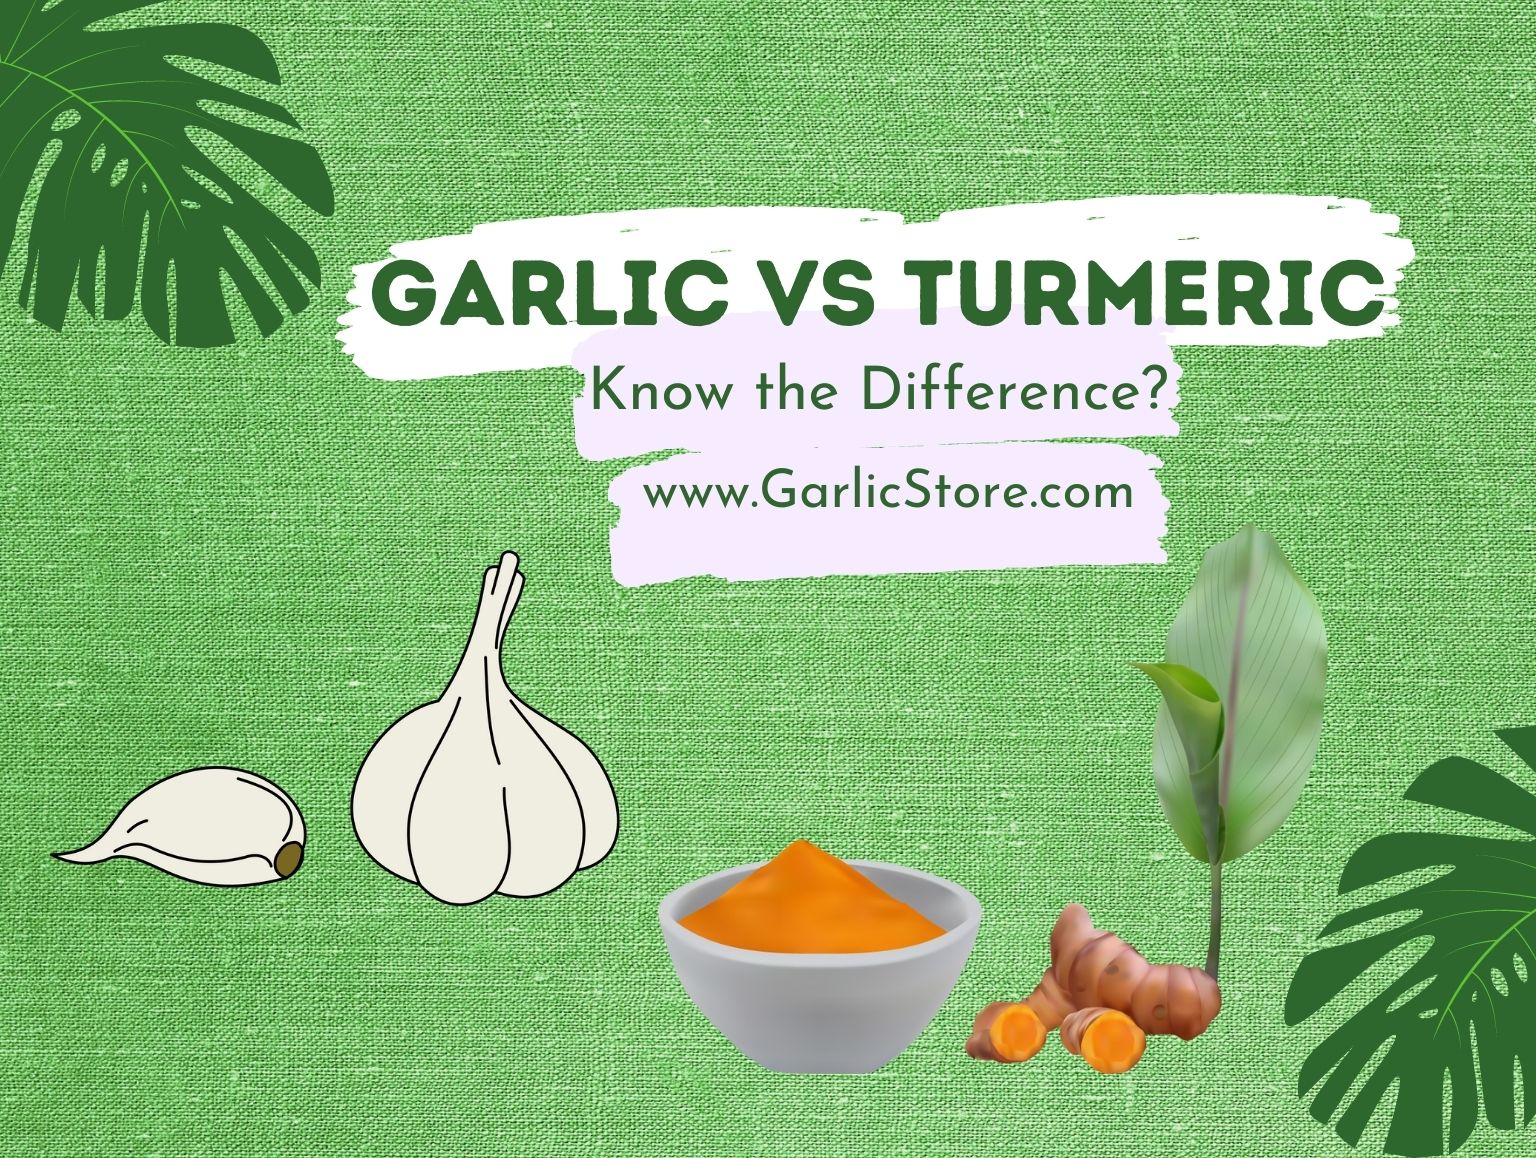 Garlic vs Turmeric